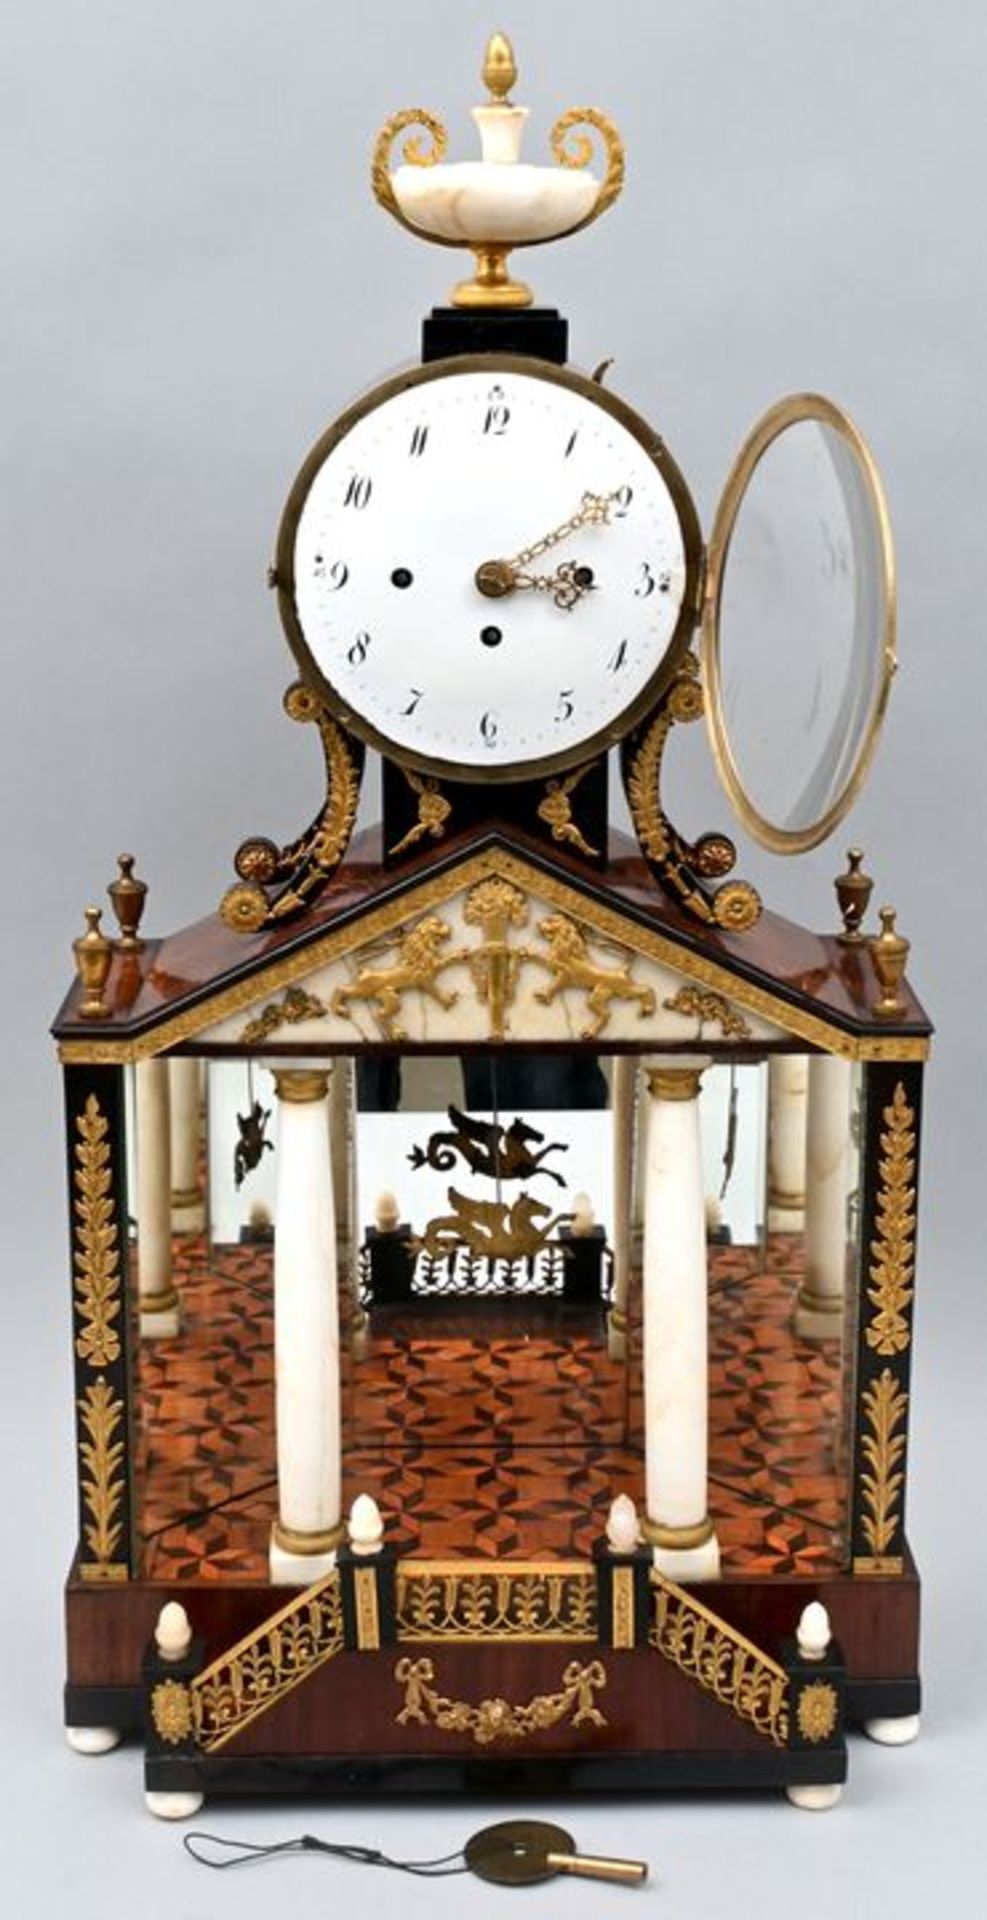 Wiener Hausherrenuhr / Table clock